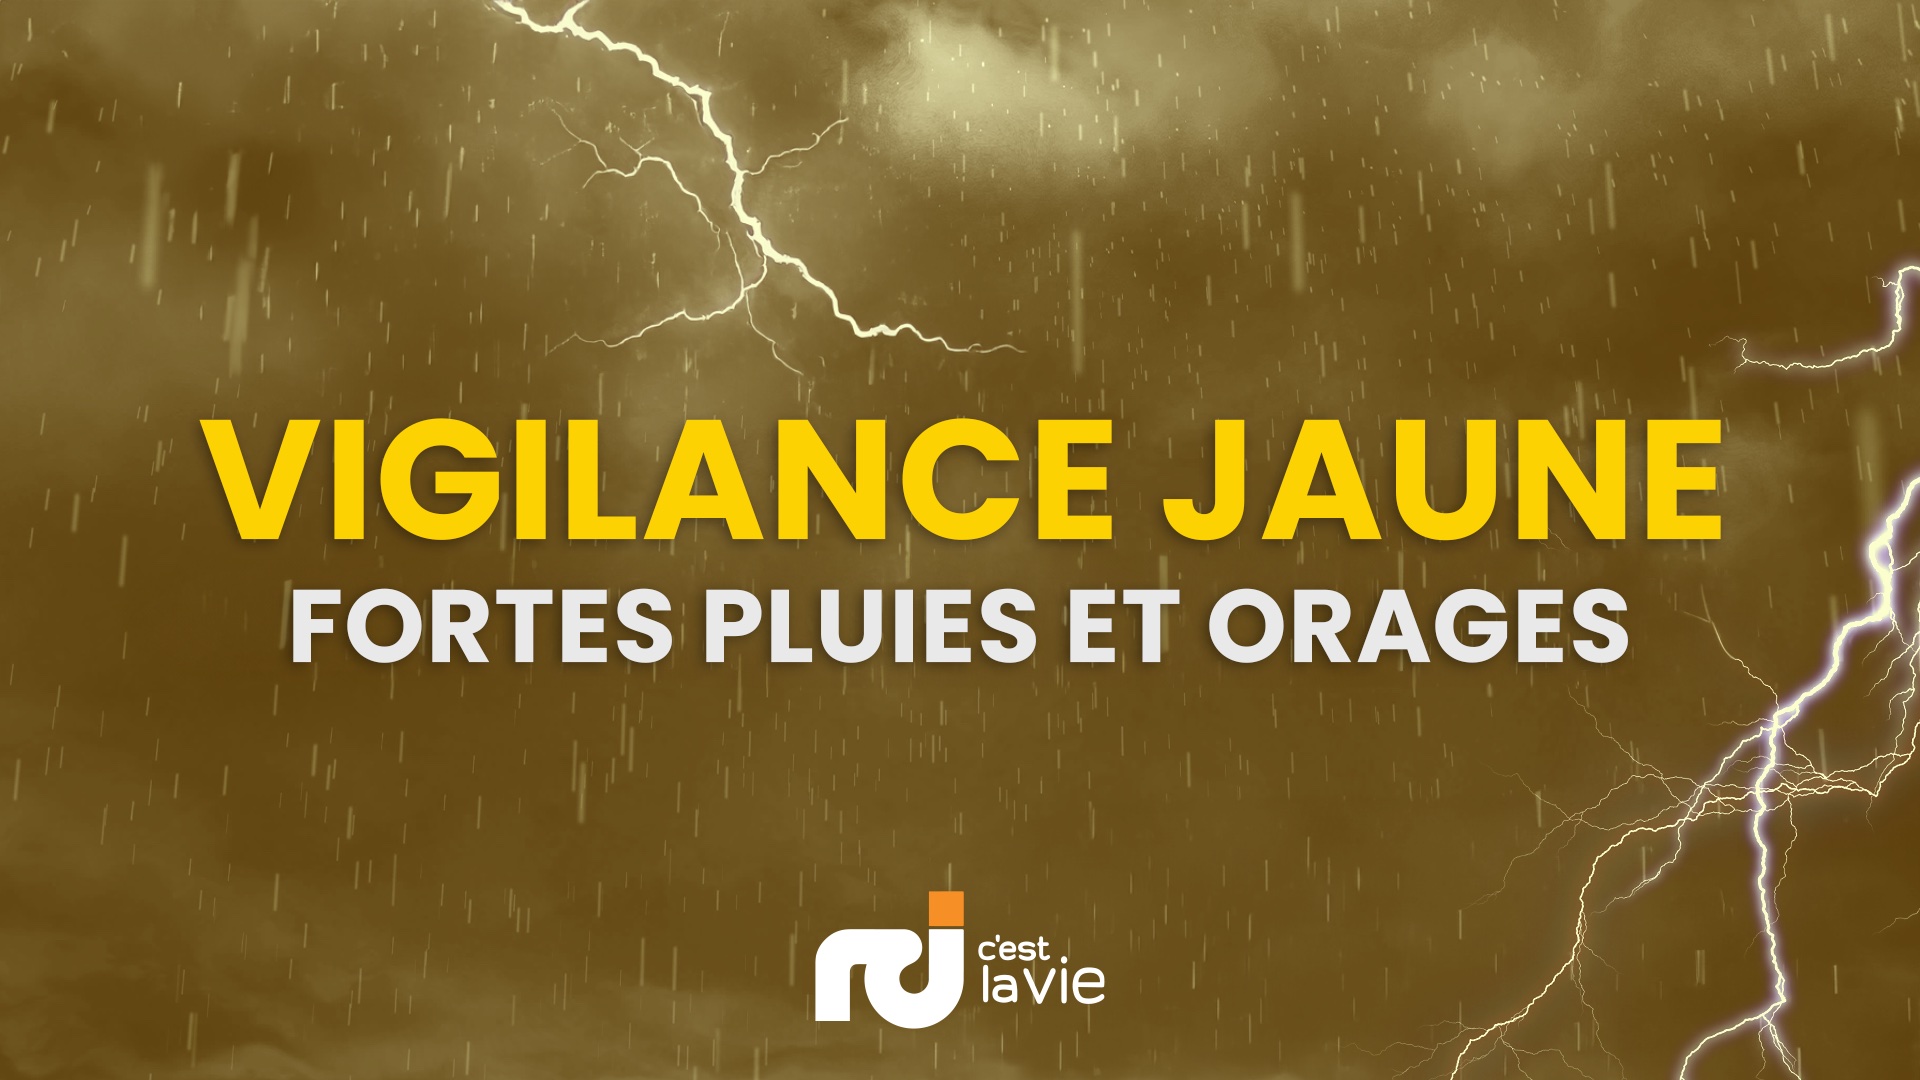     Ouragan Béryl : la Guadeloupe en vigilance Jaune fortes pluies et orages, vents violents et mer dangereuse

